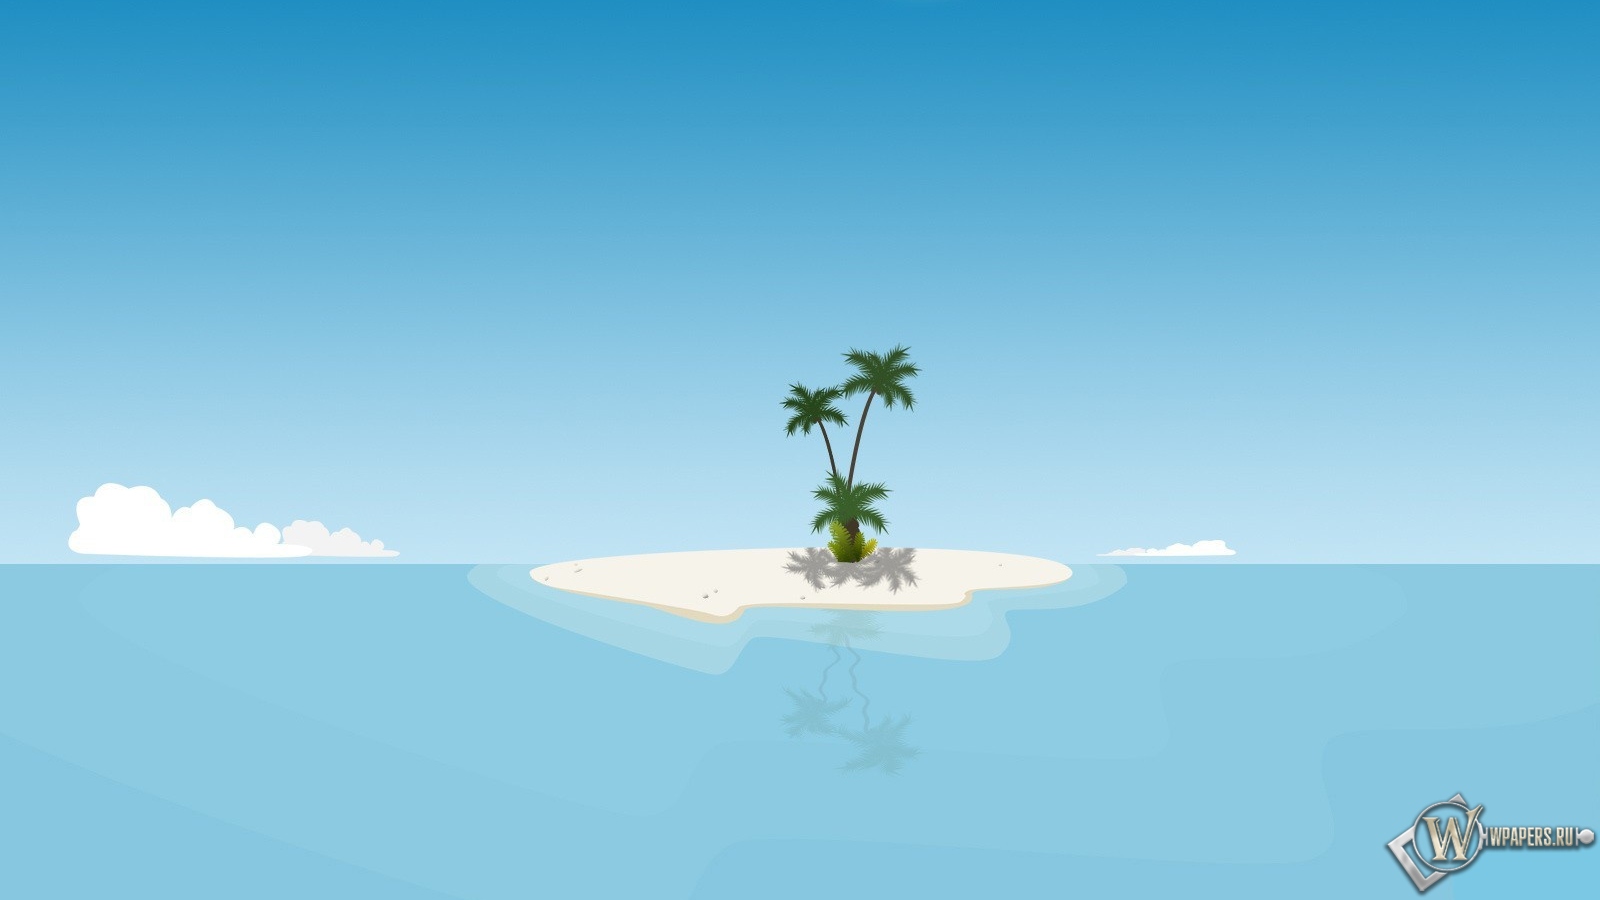 Остров с пальмой 1600x900